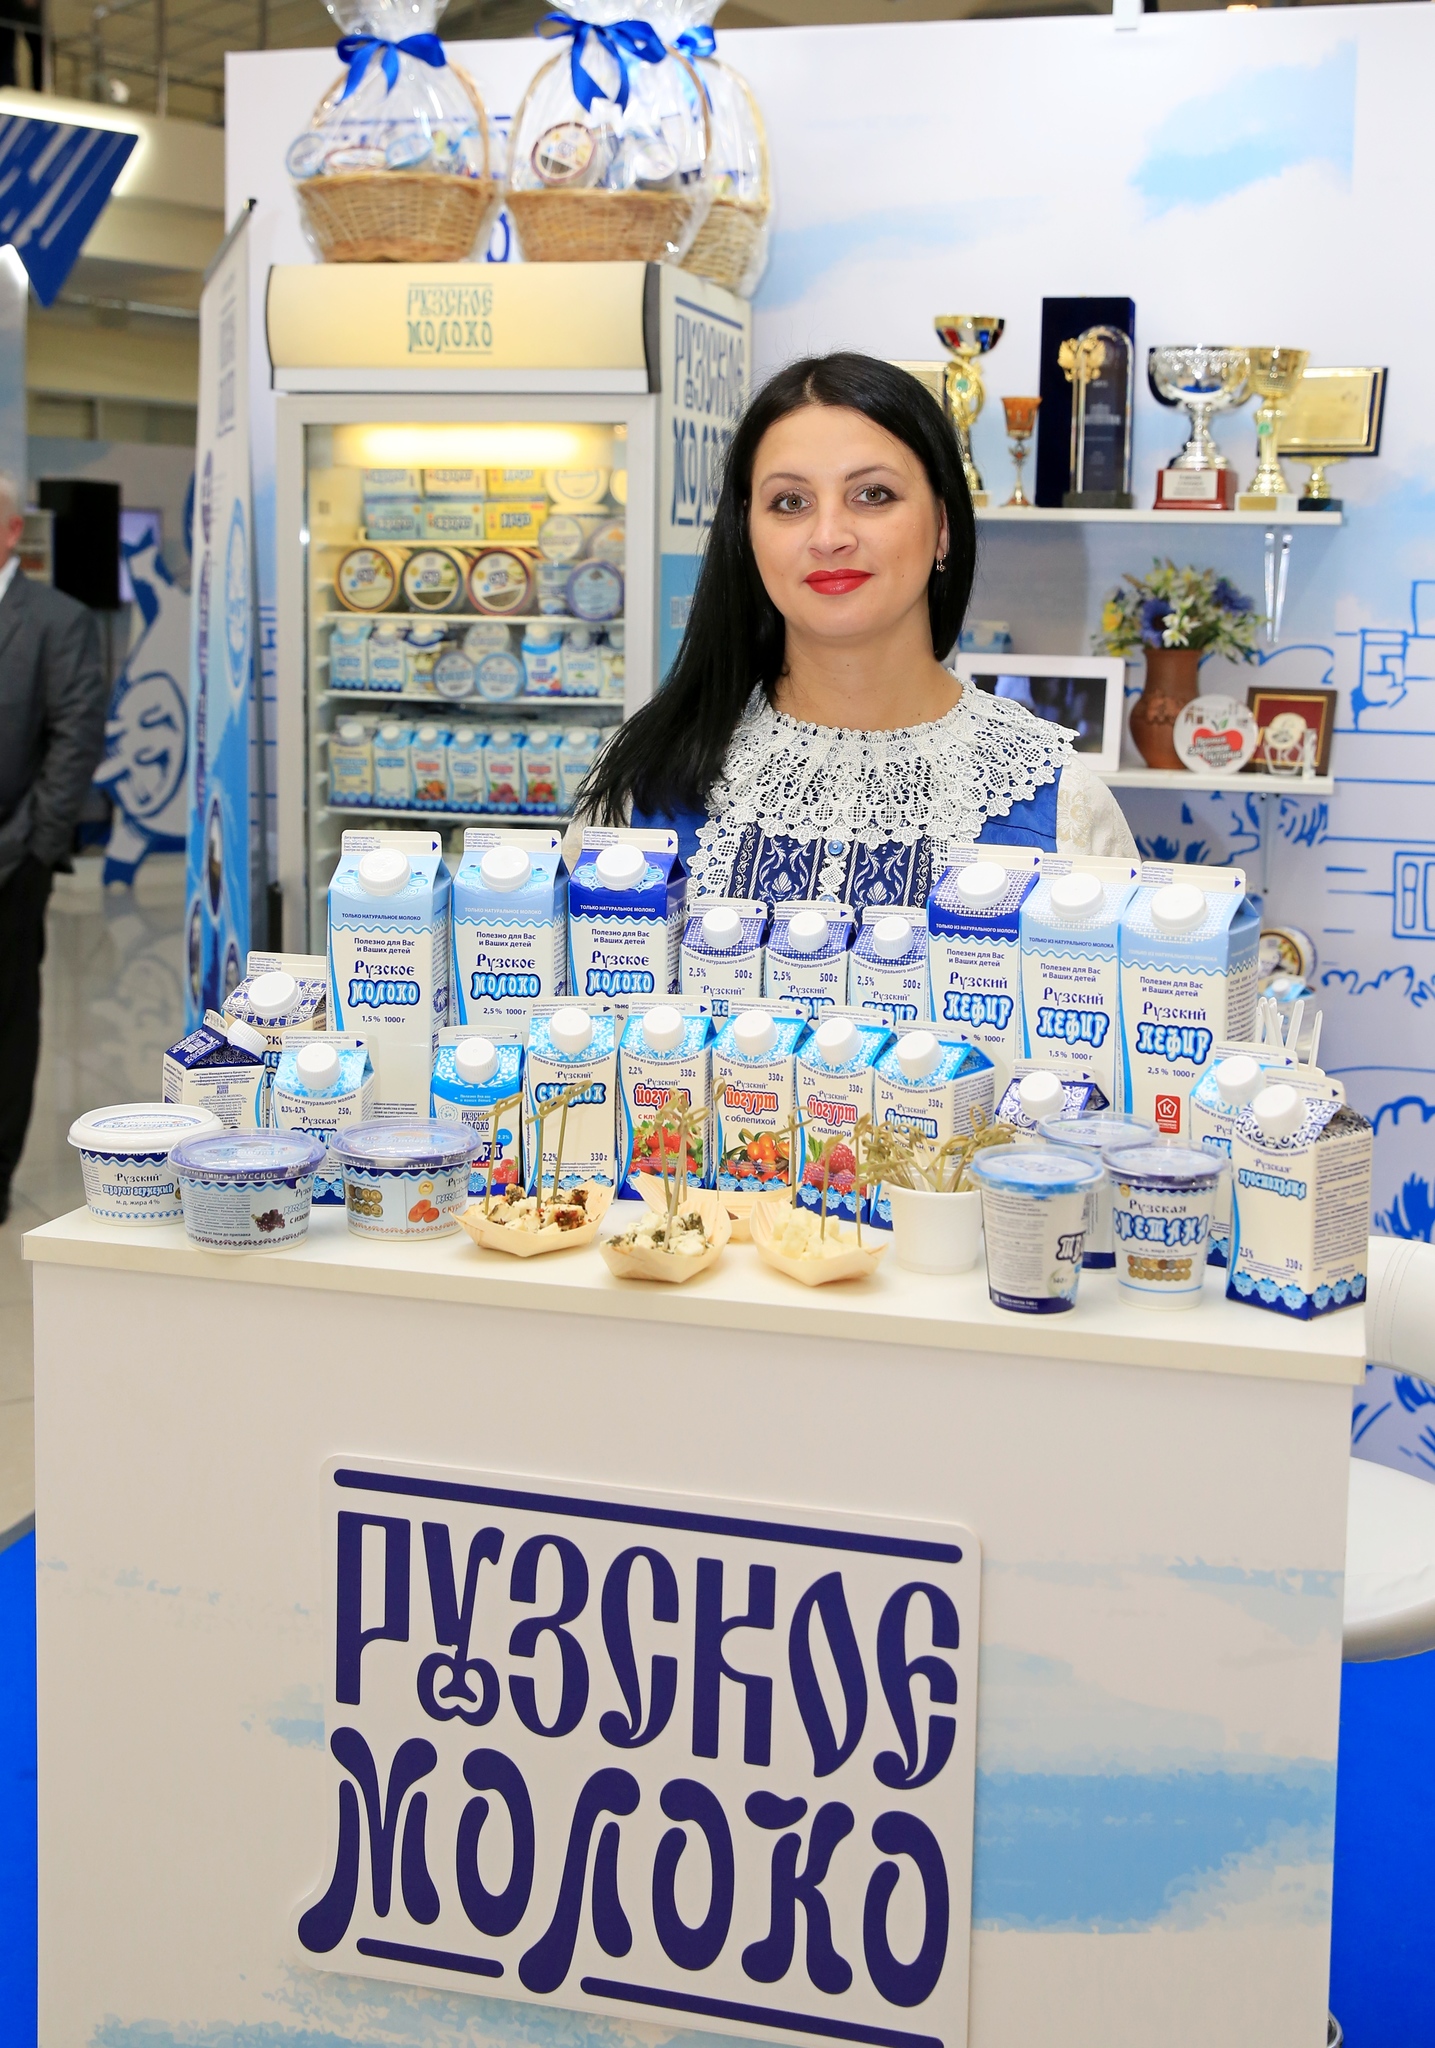 VI Молочный форум состоялся в Доме Правительства, Рузское Молоко приняло участие